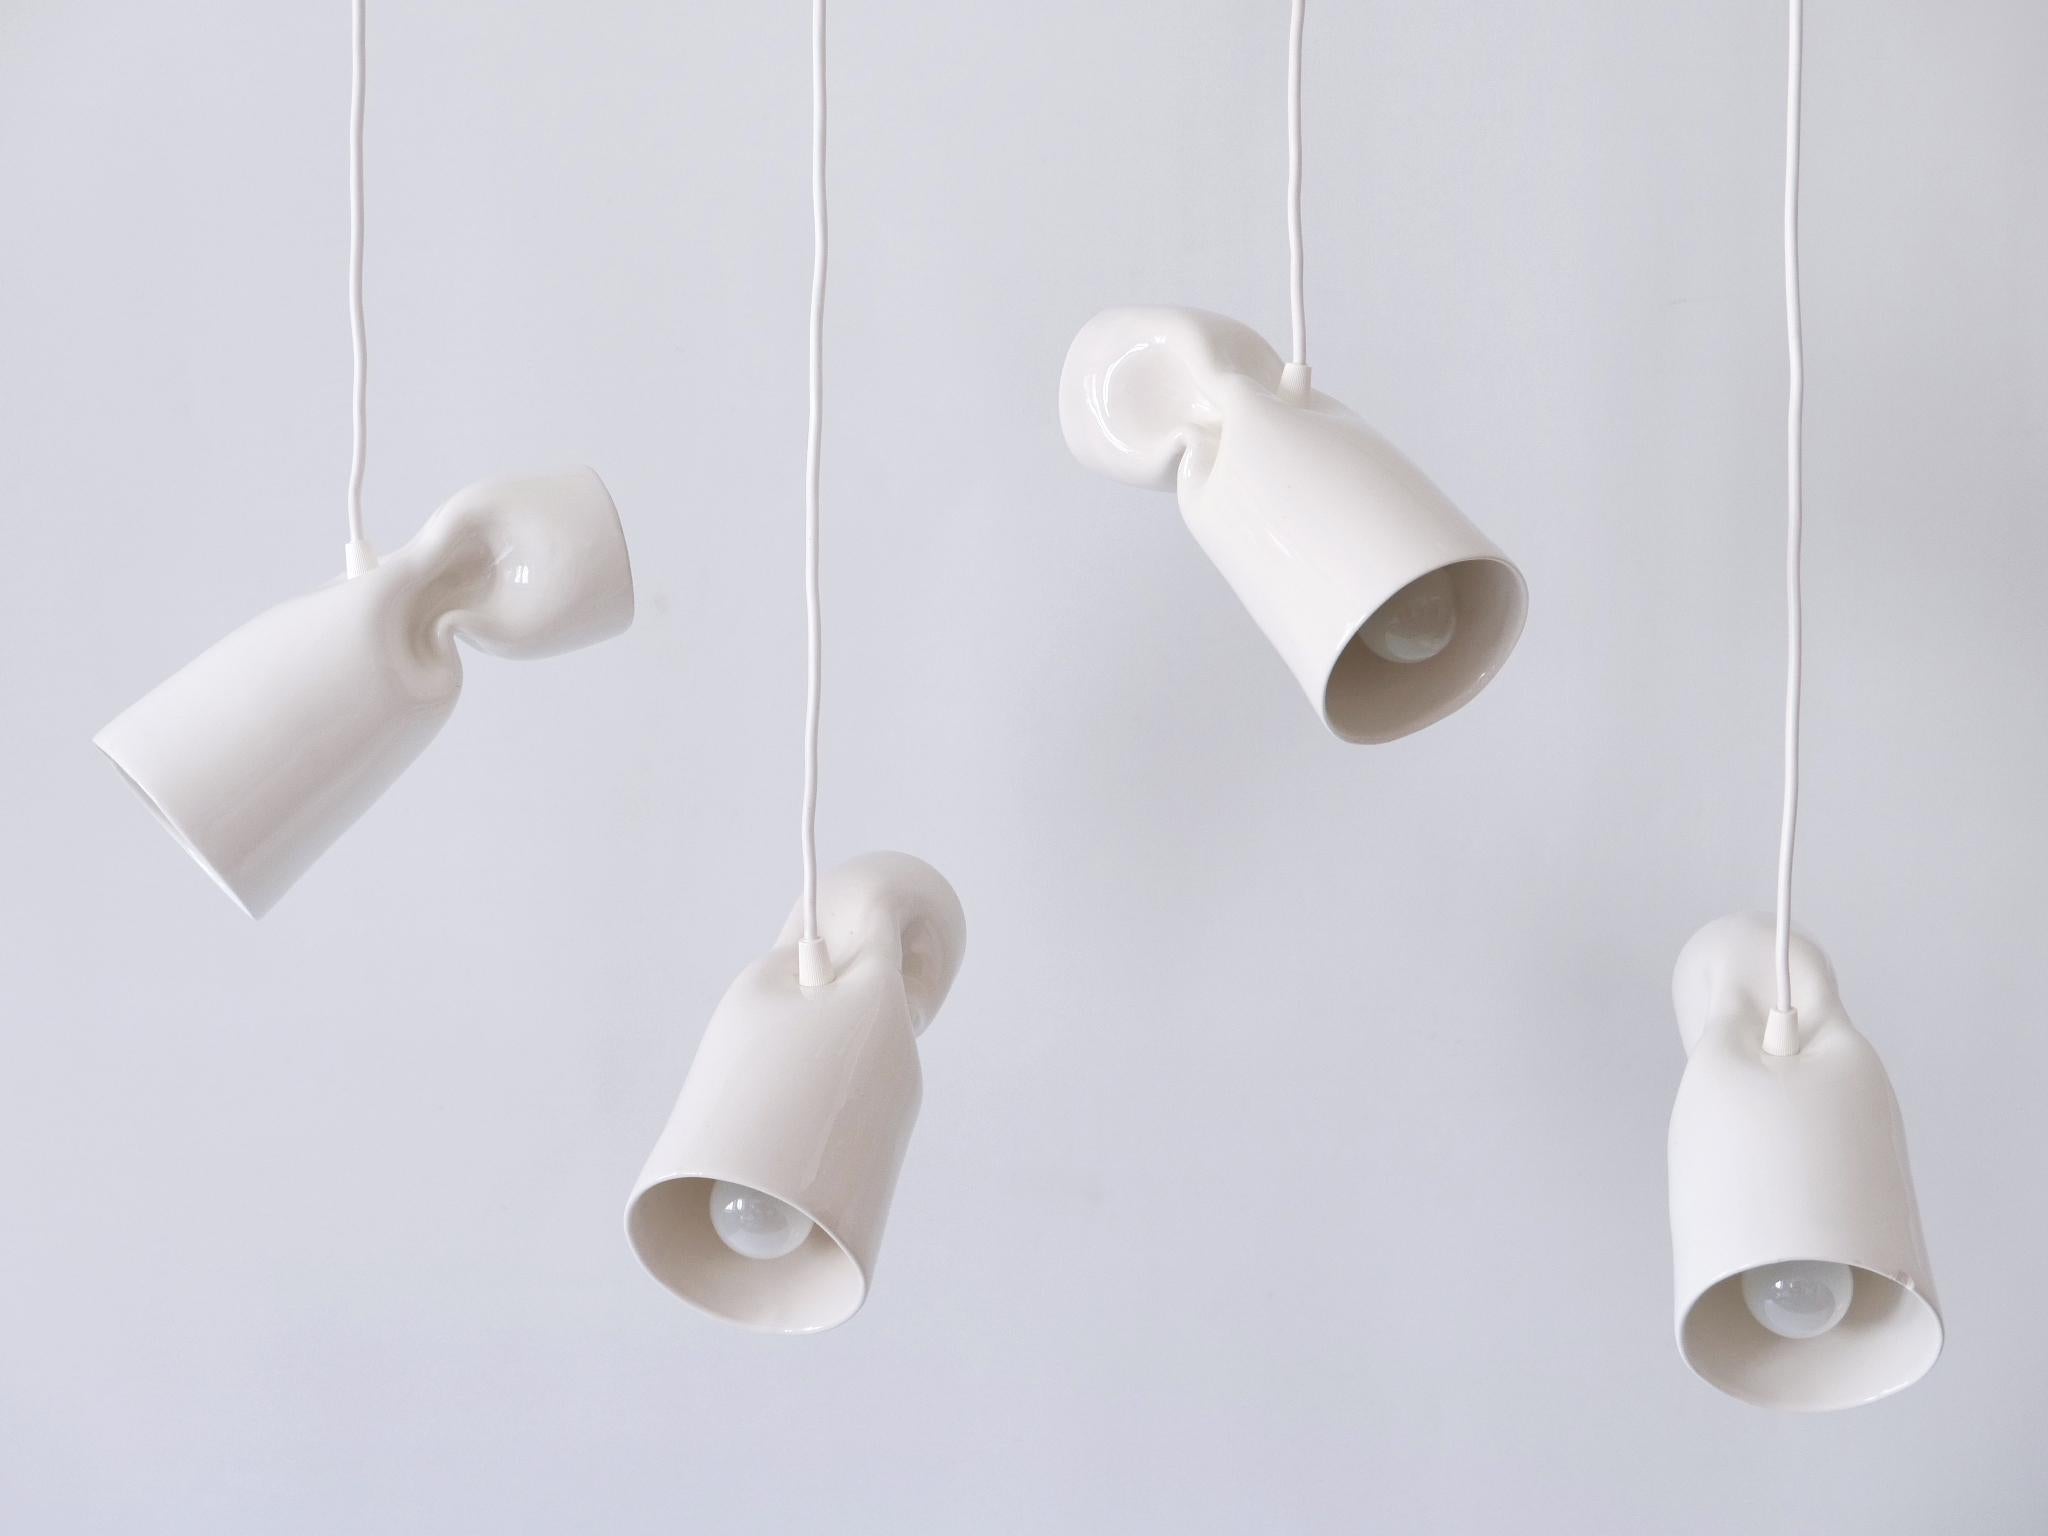 Glazed Set of Four Strangled Light Pendant Lamps by Gitta Gschwendtner for Artificial For Sale